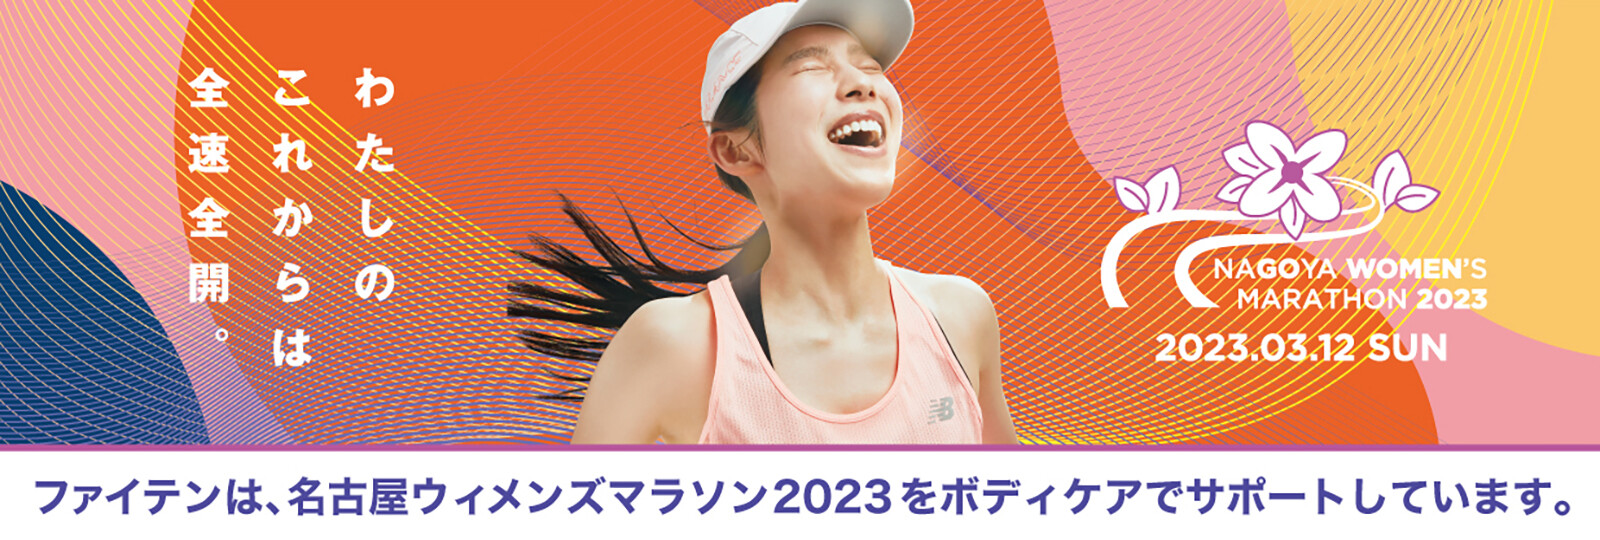 nagoya-womens-marathon2023_pc.jpg